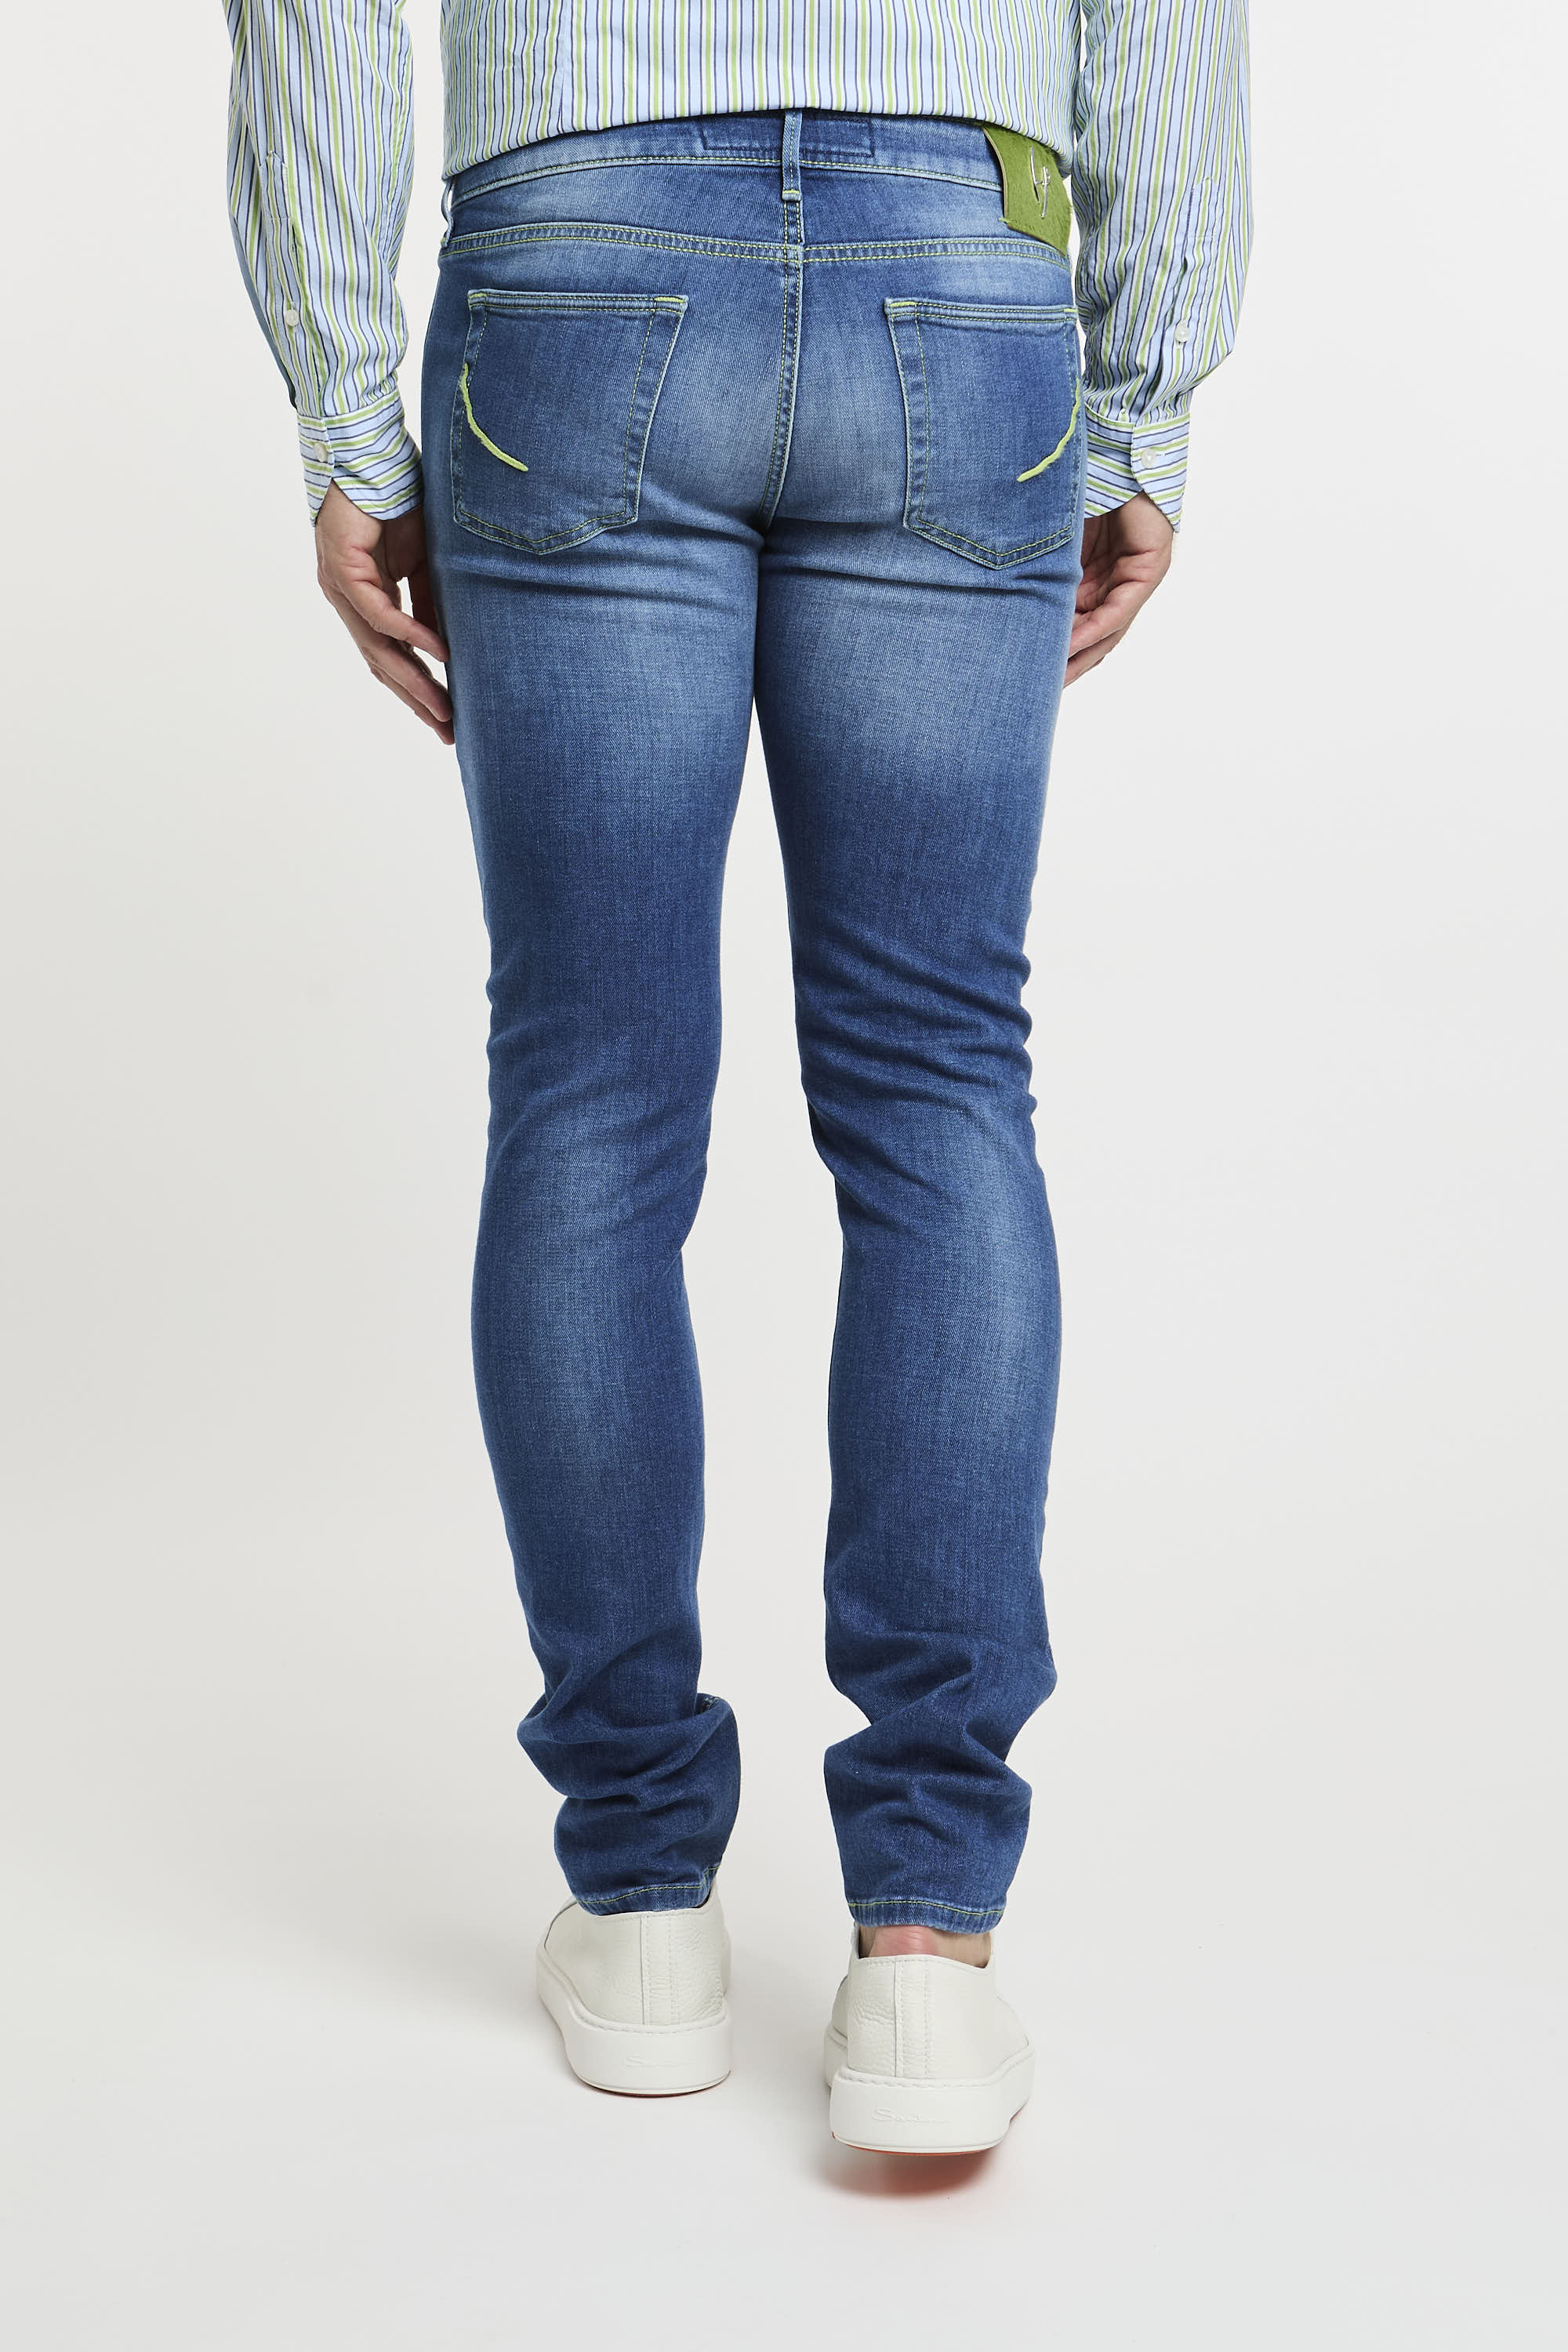 Handpicked Jeans Parma aus Denim-Baumwolle-5